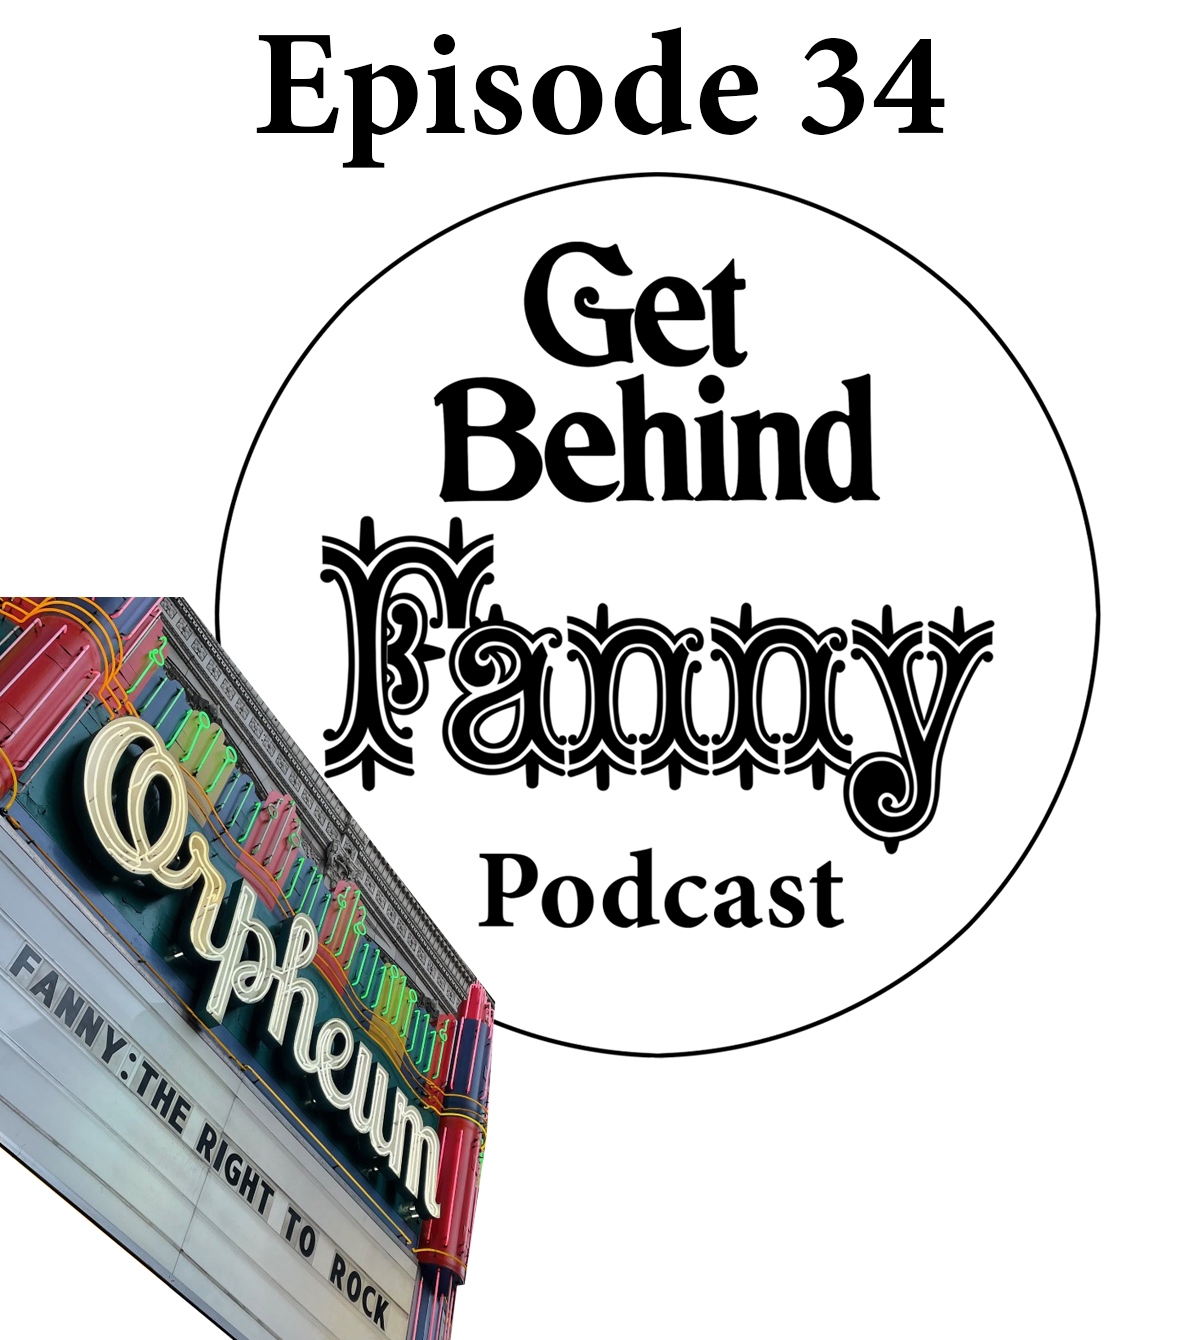 Get Behind Fanny: Episode 34